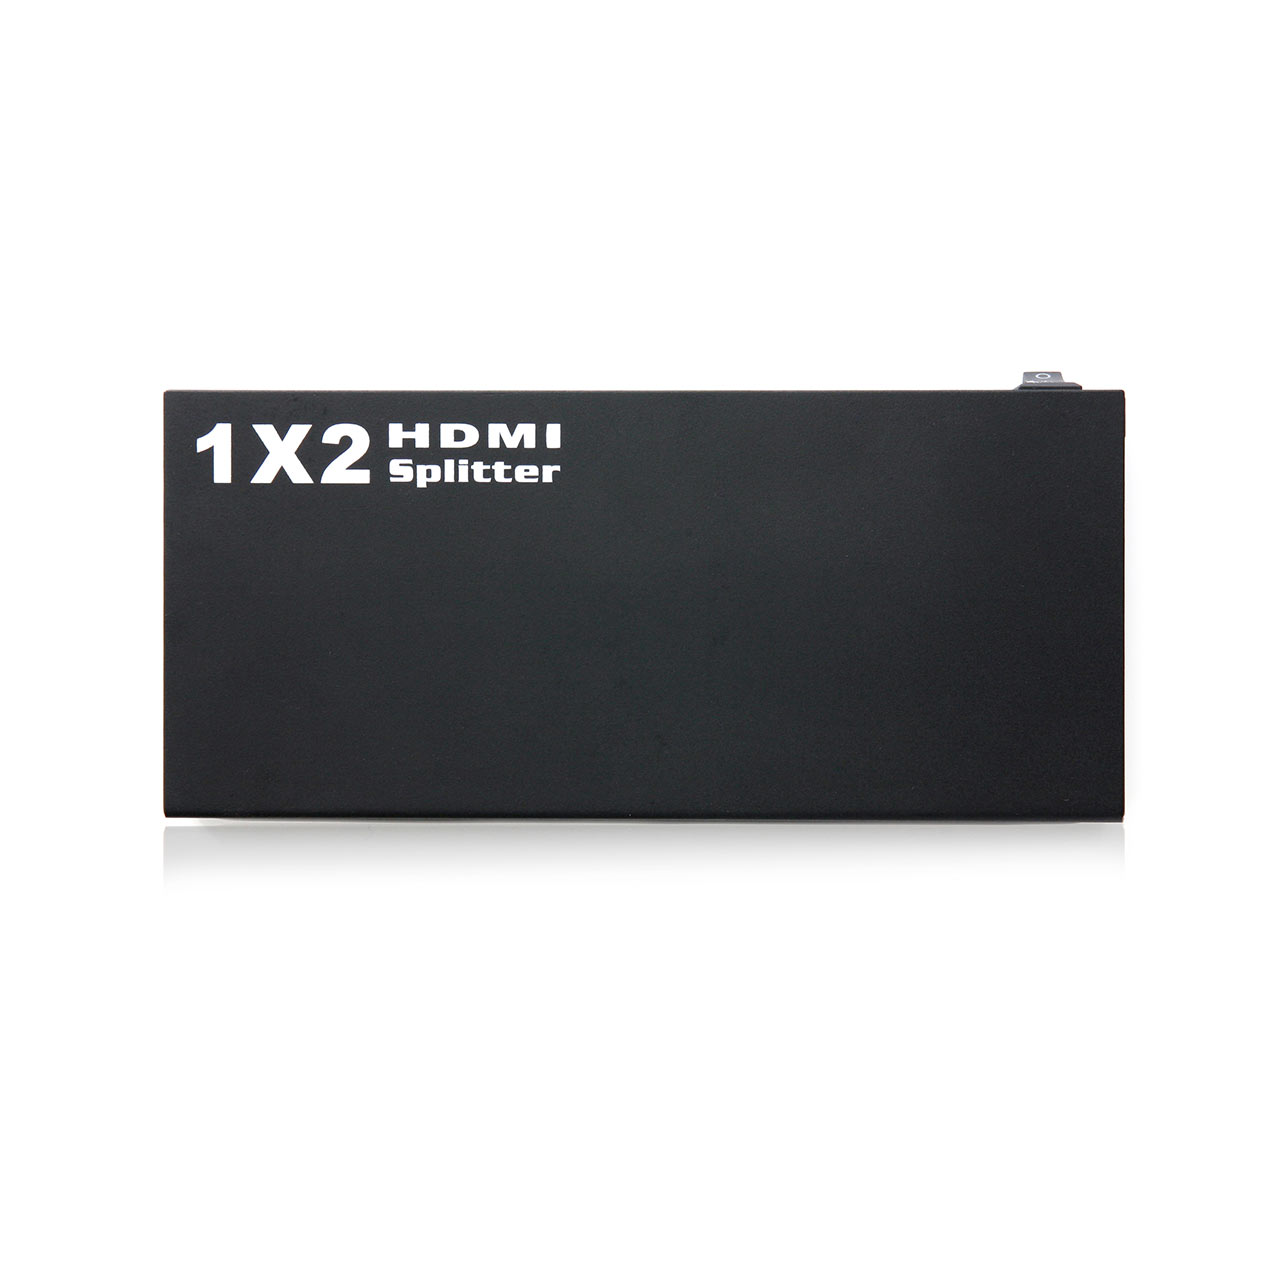 HDMIz@Xvb^[i1́~2ójy߁z 400-VGA003